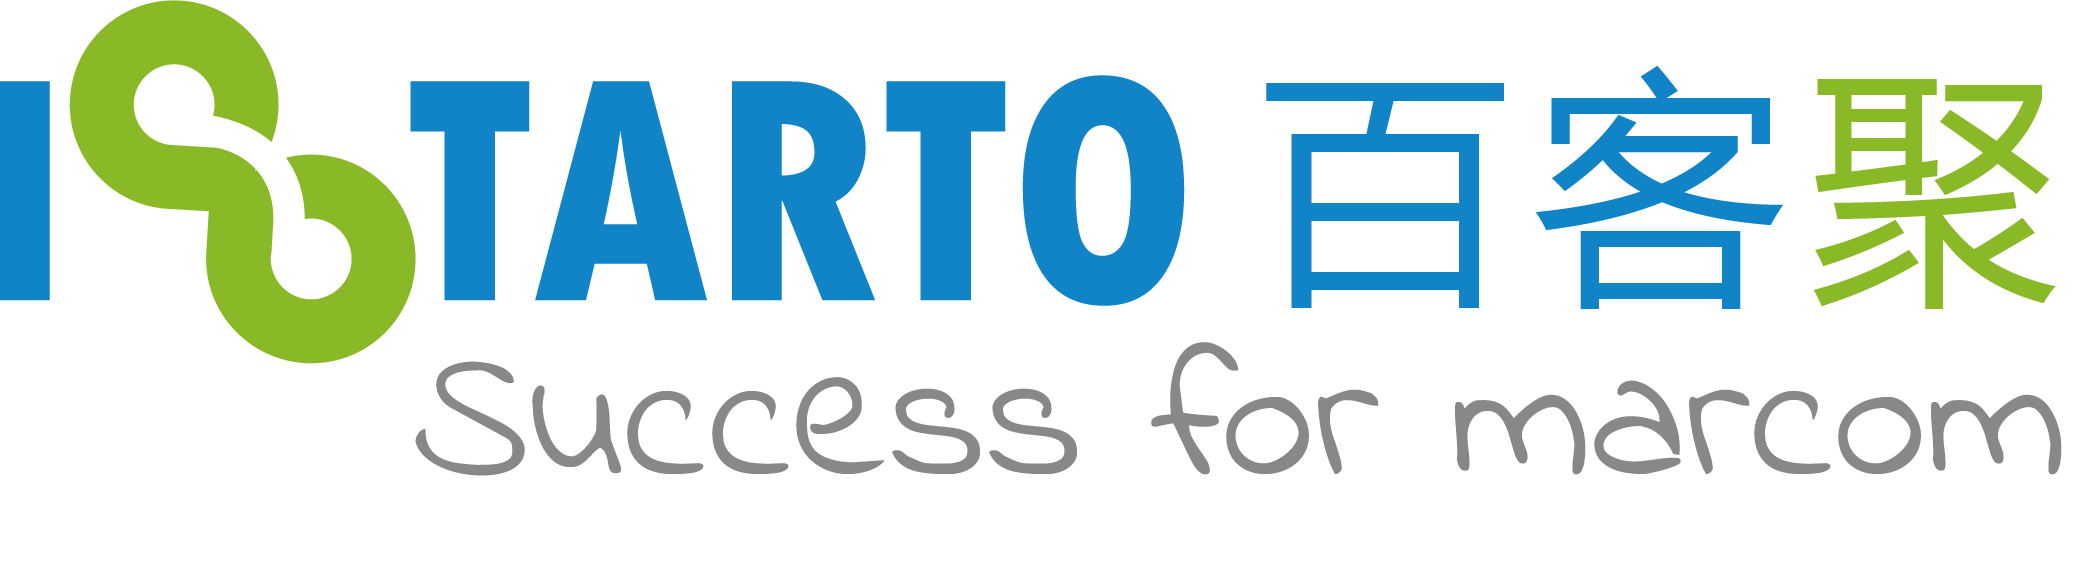 iStarto百客聚, 提供包括網站建設, seo服務, 搜索行銷, 社媒廣告, 行銷自動化, 搜索引擎優化等互聯網廣告技術服務。